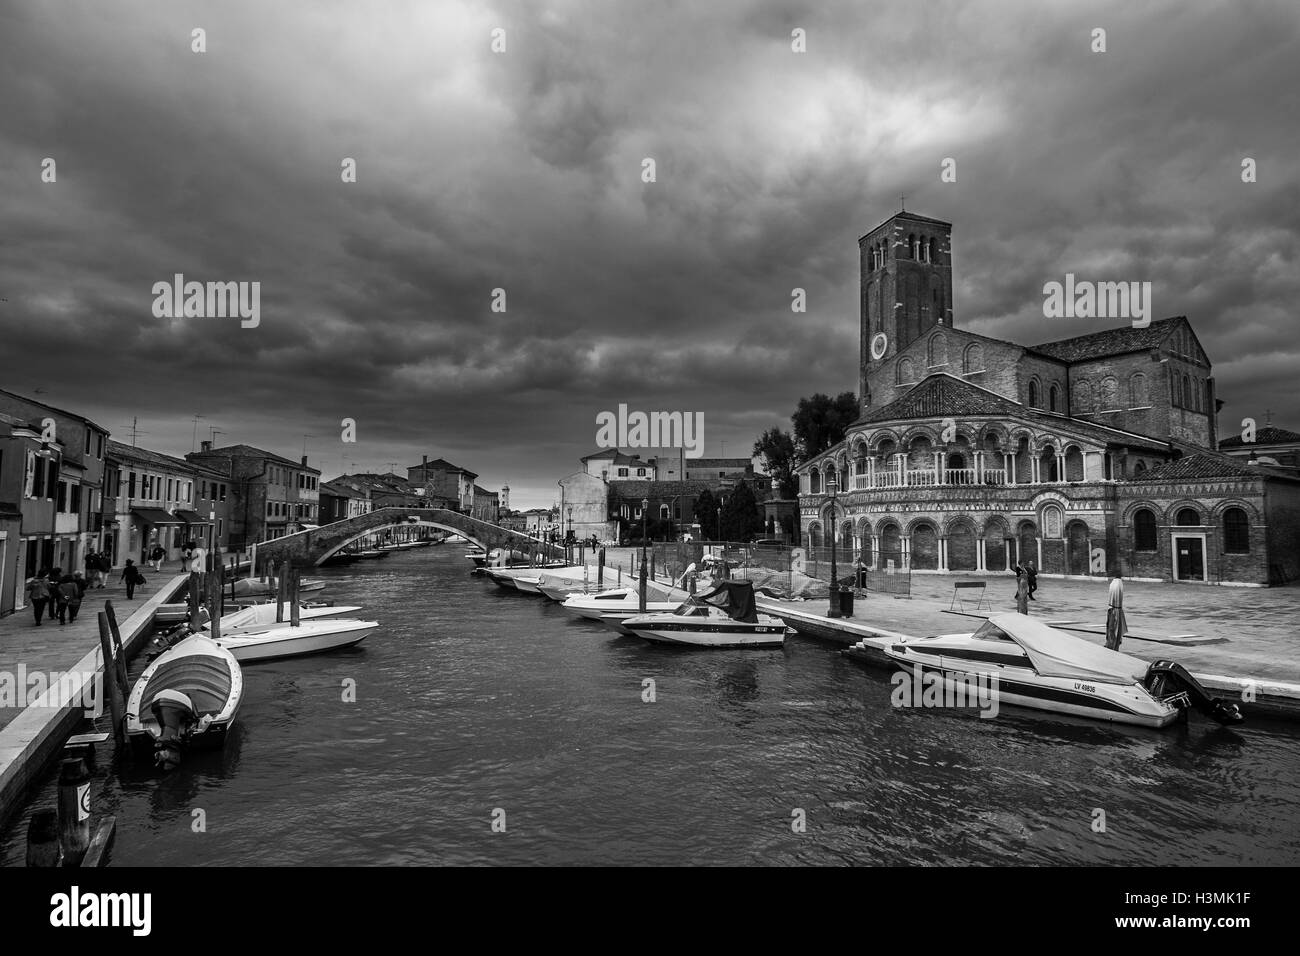 Une vue sur l'église et le canal principal de Murano, l'île des verreries de Venise. Banque D'Images